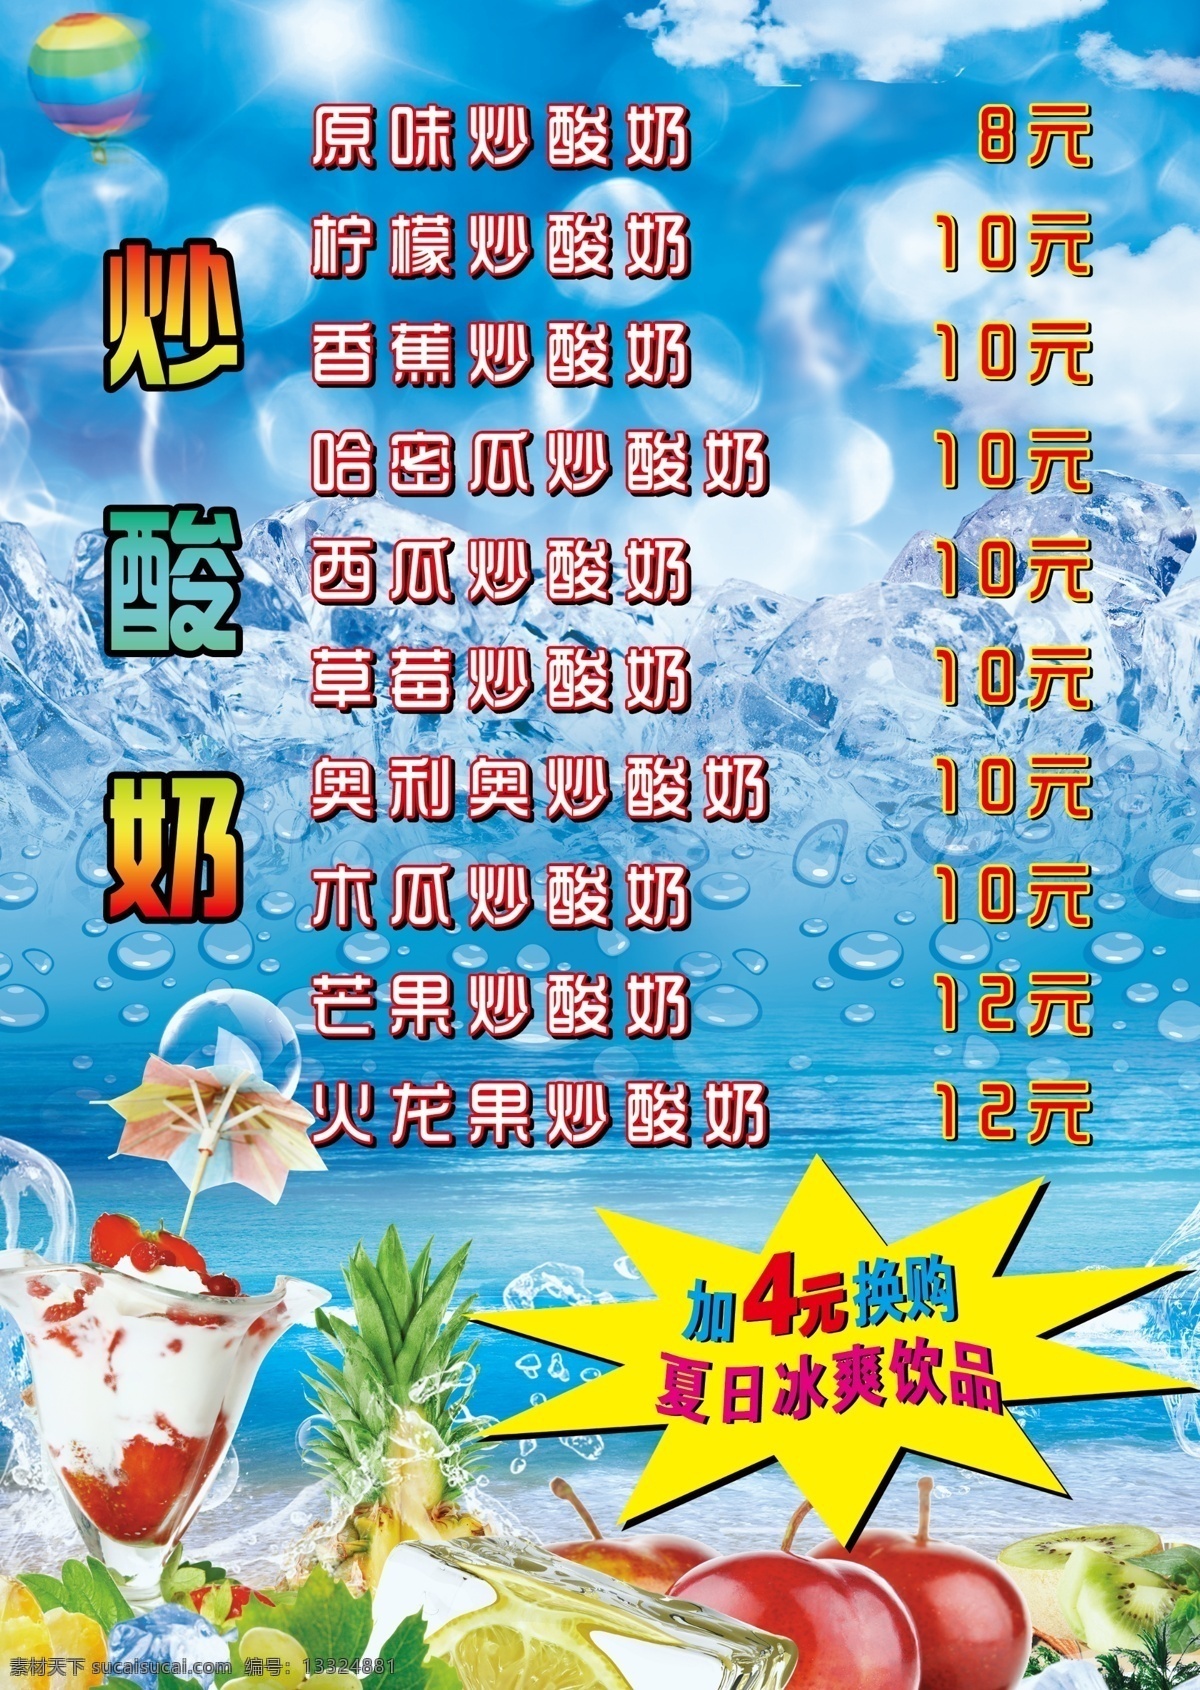 炒酸奶宣传单 炒酸奶 冰饮 夏日 冰爽 酸奶 dm宣传单